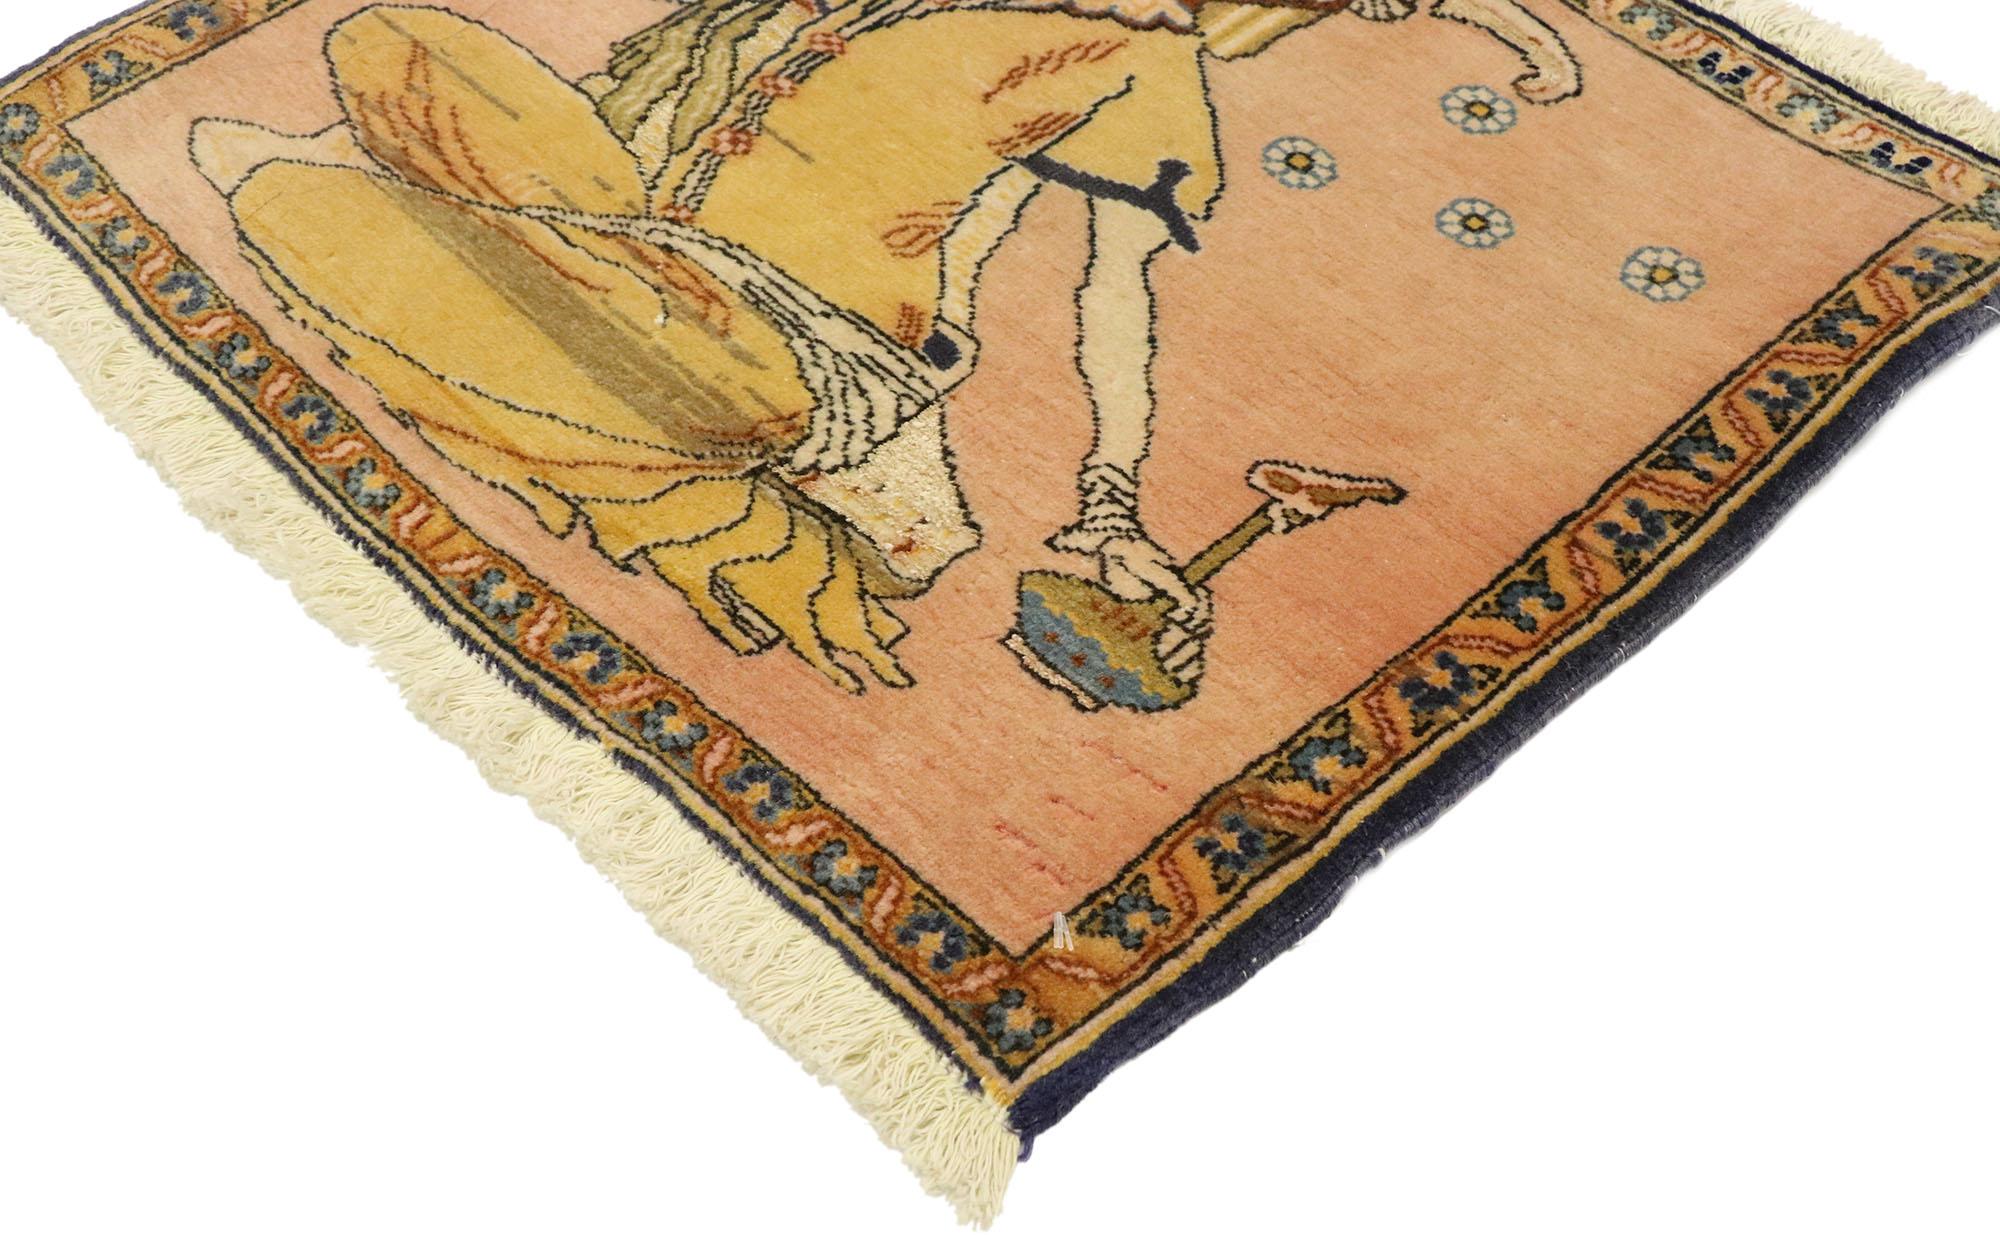 76200, tapis vintage persan Khamseh Pictorial avec scène de derviches, tenture murale perse. La Perse antique est la véritable origine de la viticulture et de la consommation de vin, comme le montre ce tapis pictural Khamseh en laine noué à la main.